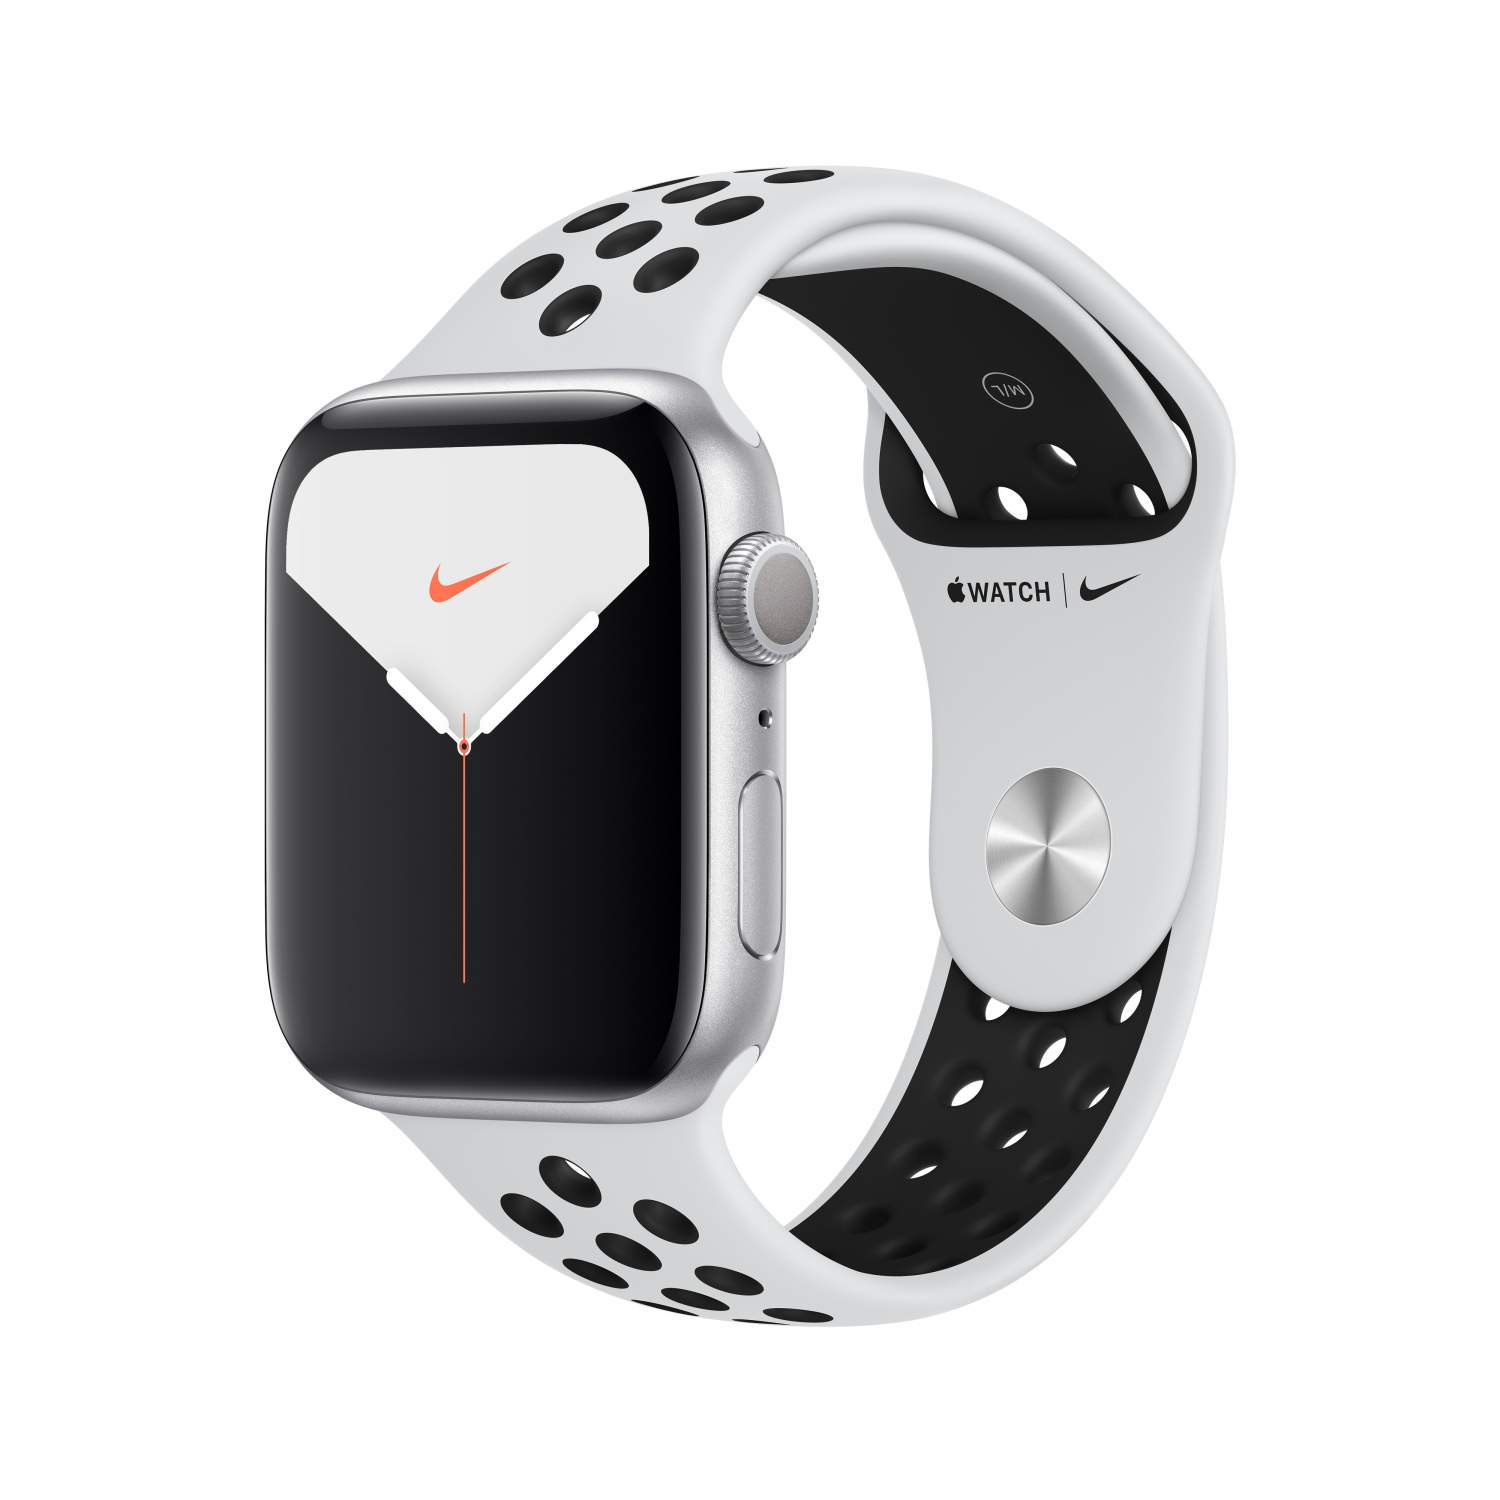 Купить Apple Watch 5 - цена на часы Эпл Вотч Сериес 5 в интернет-магазинах  Москвы на sbermegamarket.ru